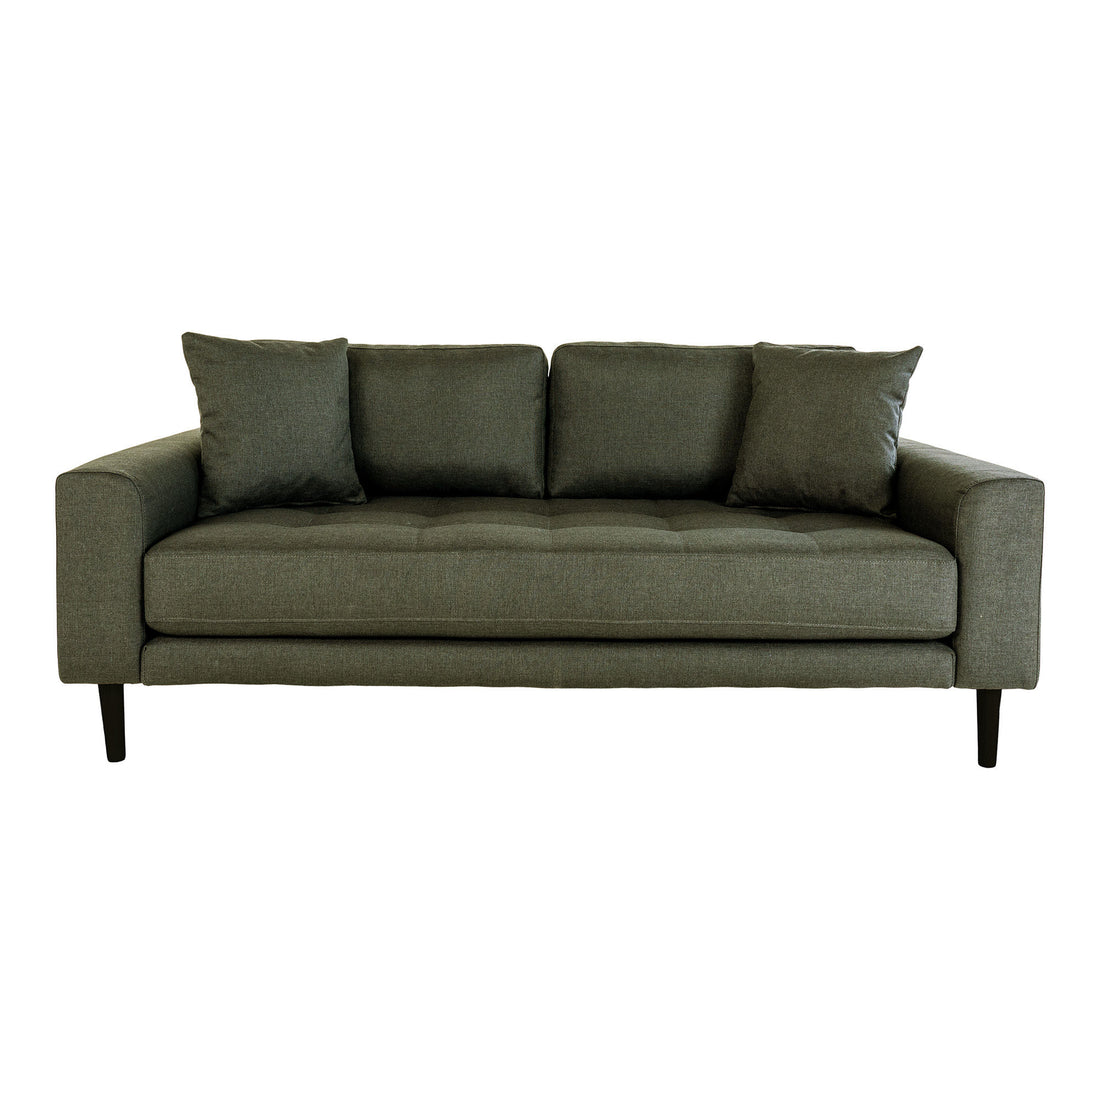 Lido 2,5 -person sofa - 2,5 -person sofa i olivengrønn med to puter og svart treben, HN1020 - 1 - PC -er